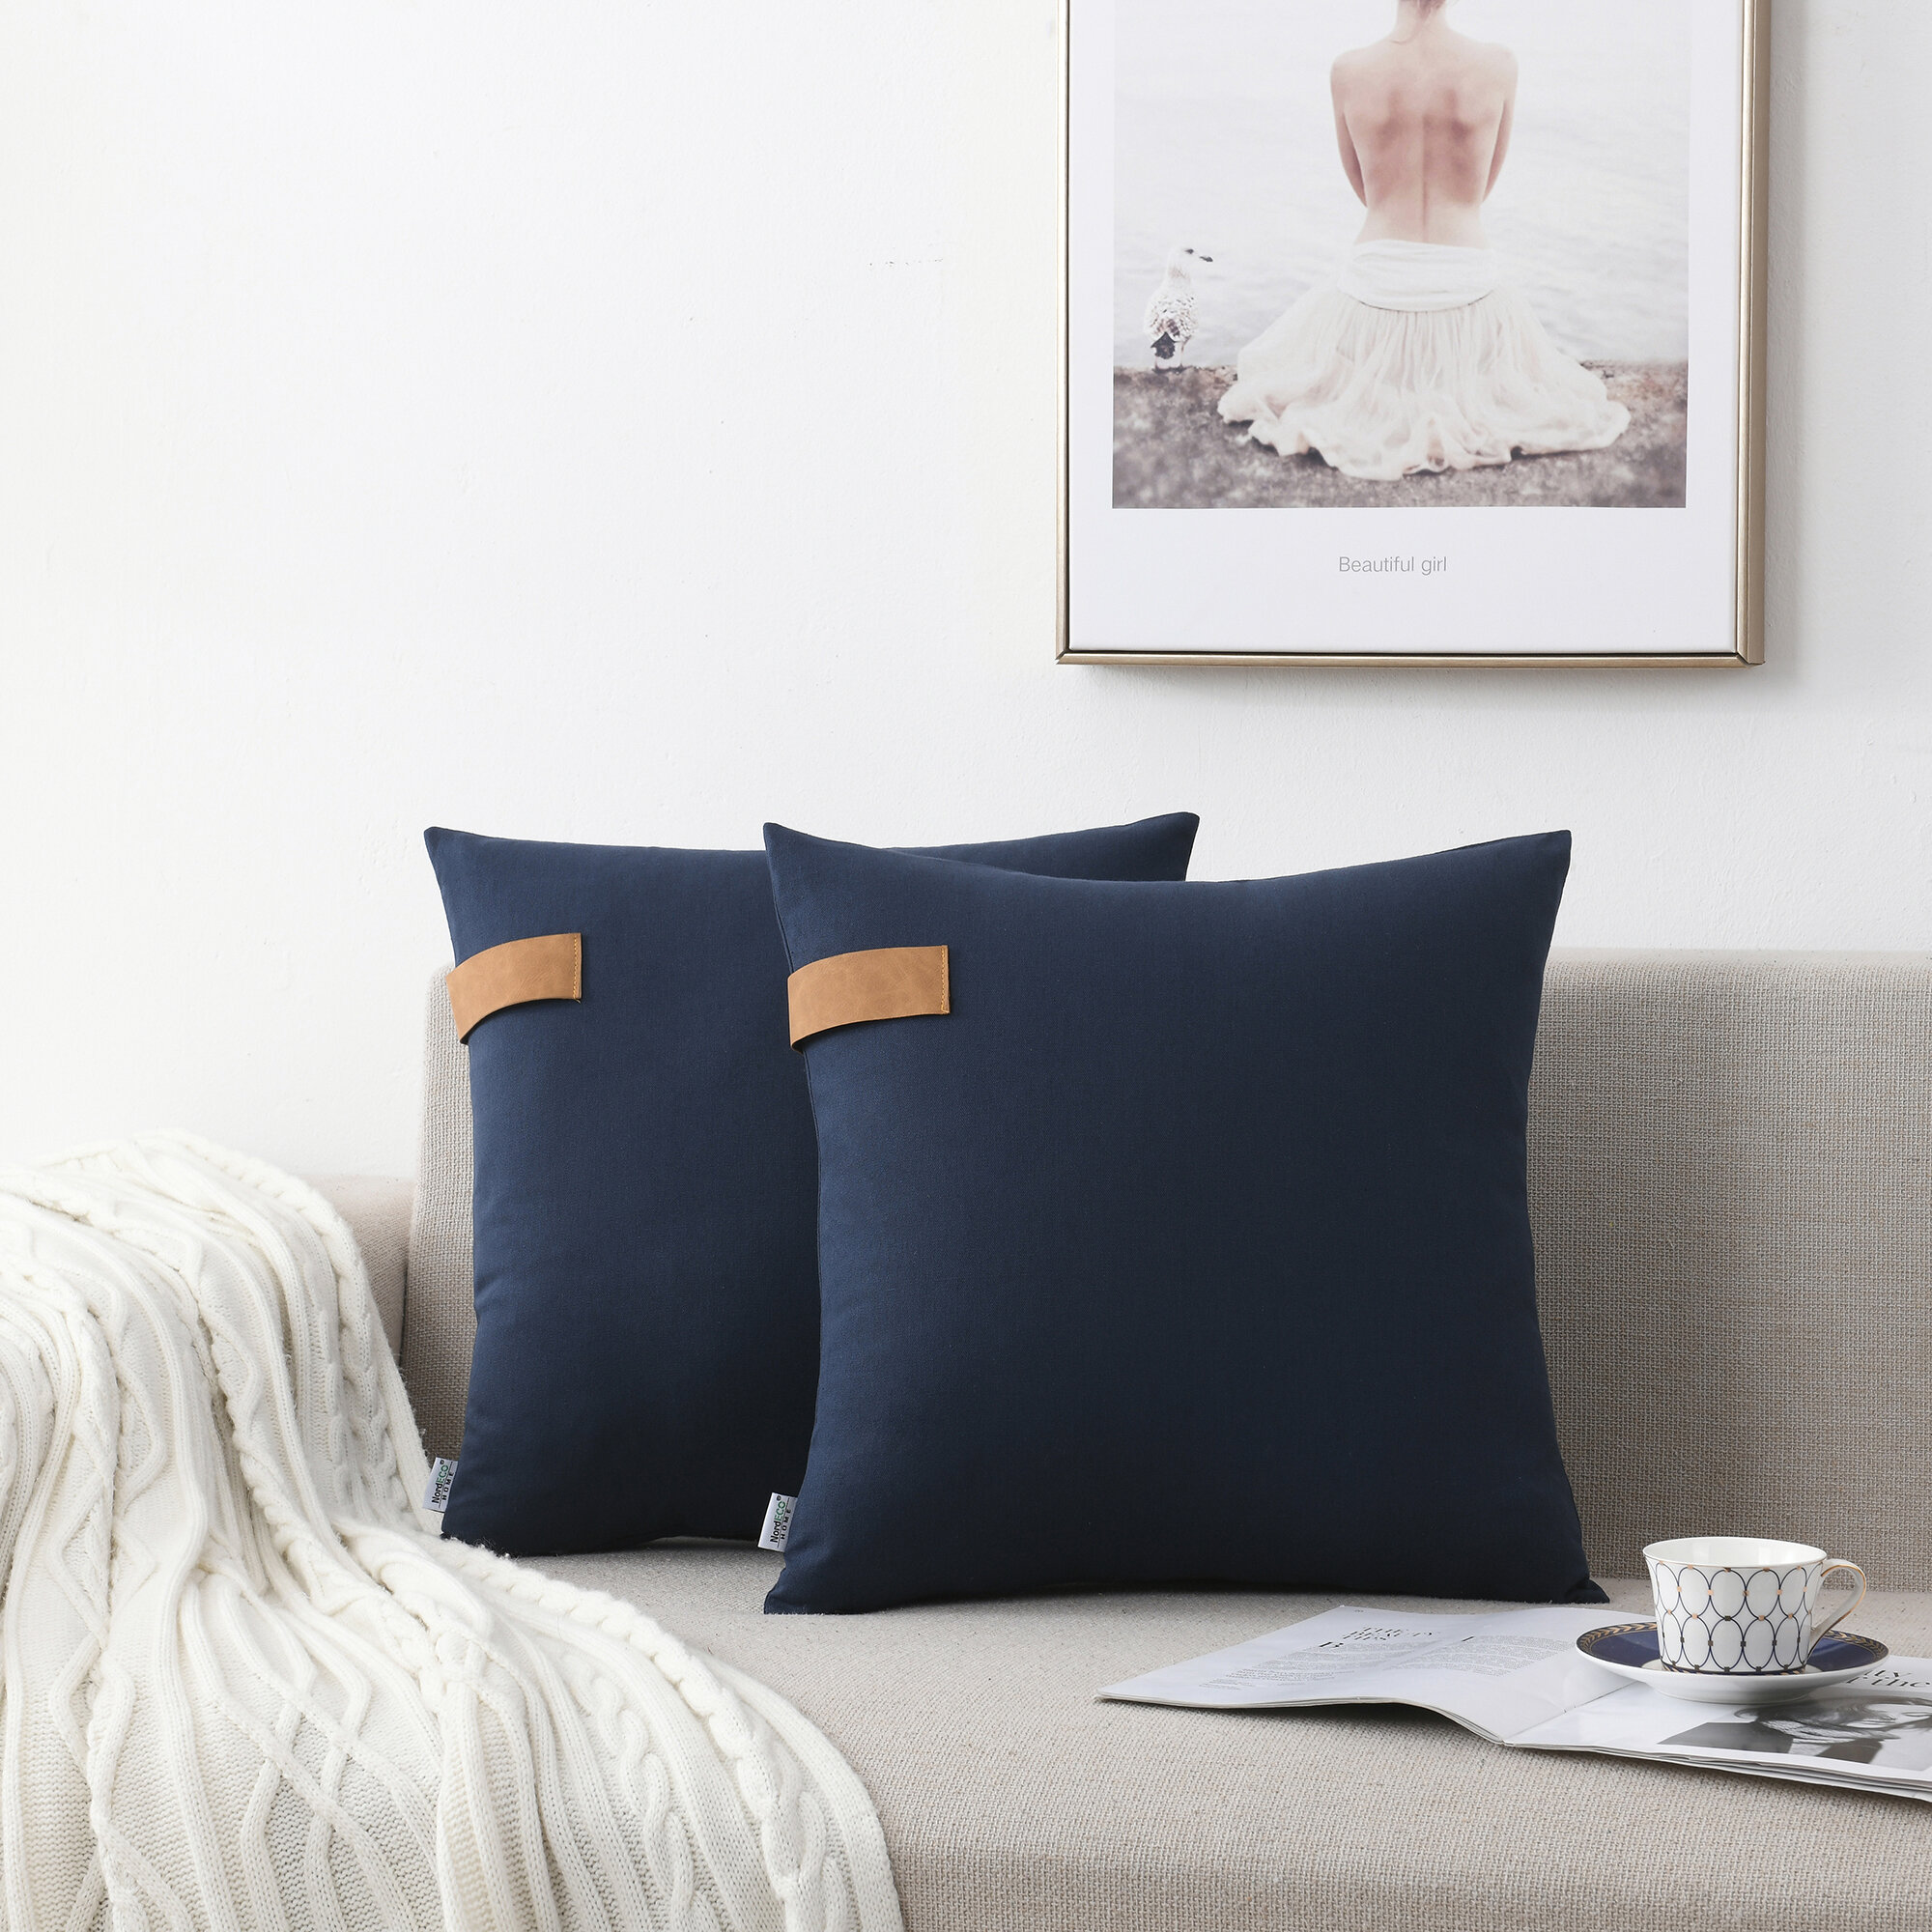 NordECO HOME Pillow Cover & Reviews